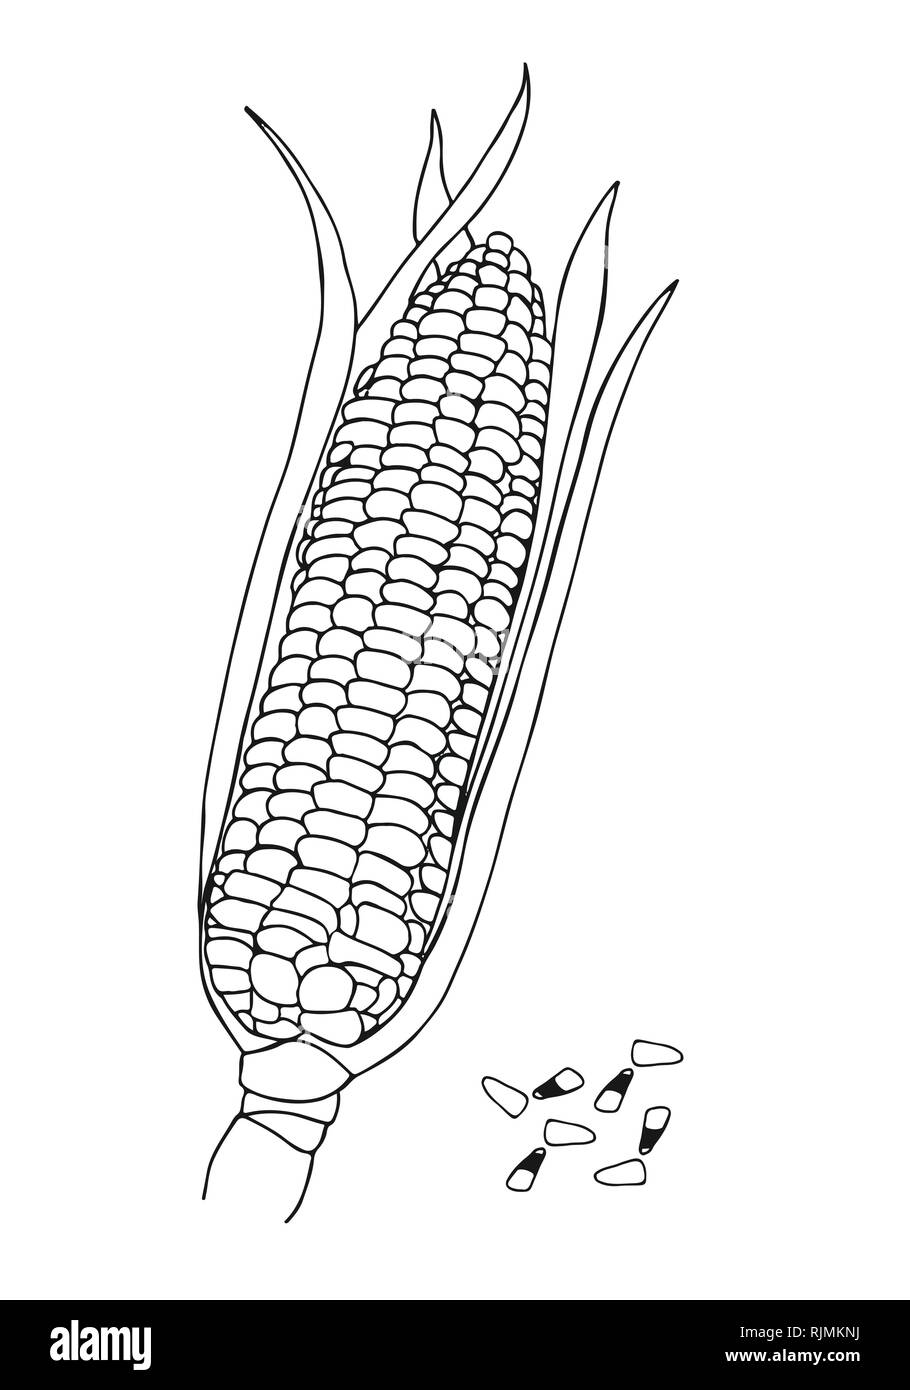 Vektor Hand gezeichnet doodle Maiskolben und Maiskörner Stock Vektor